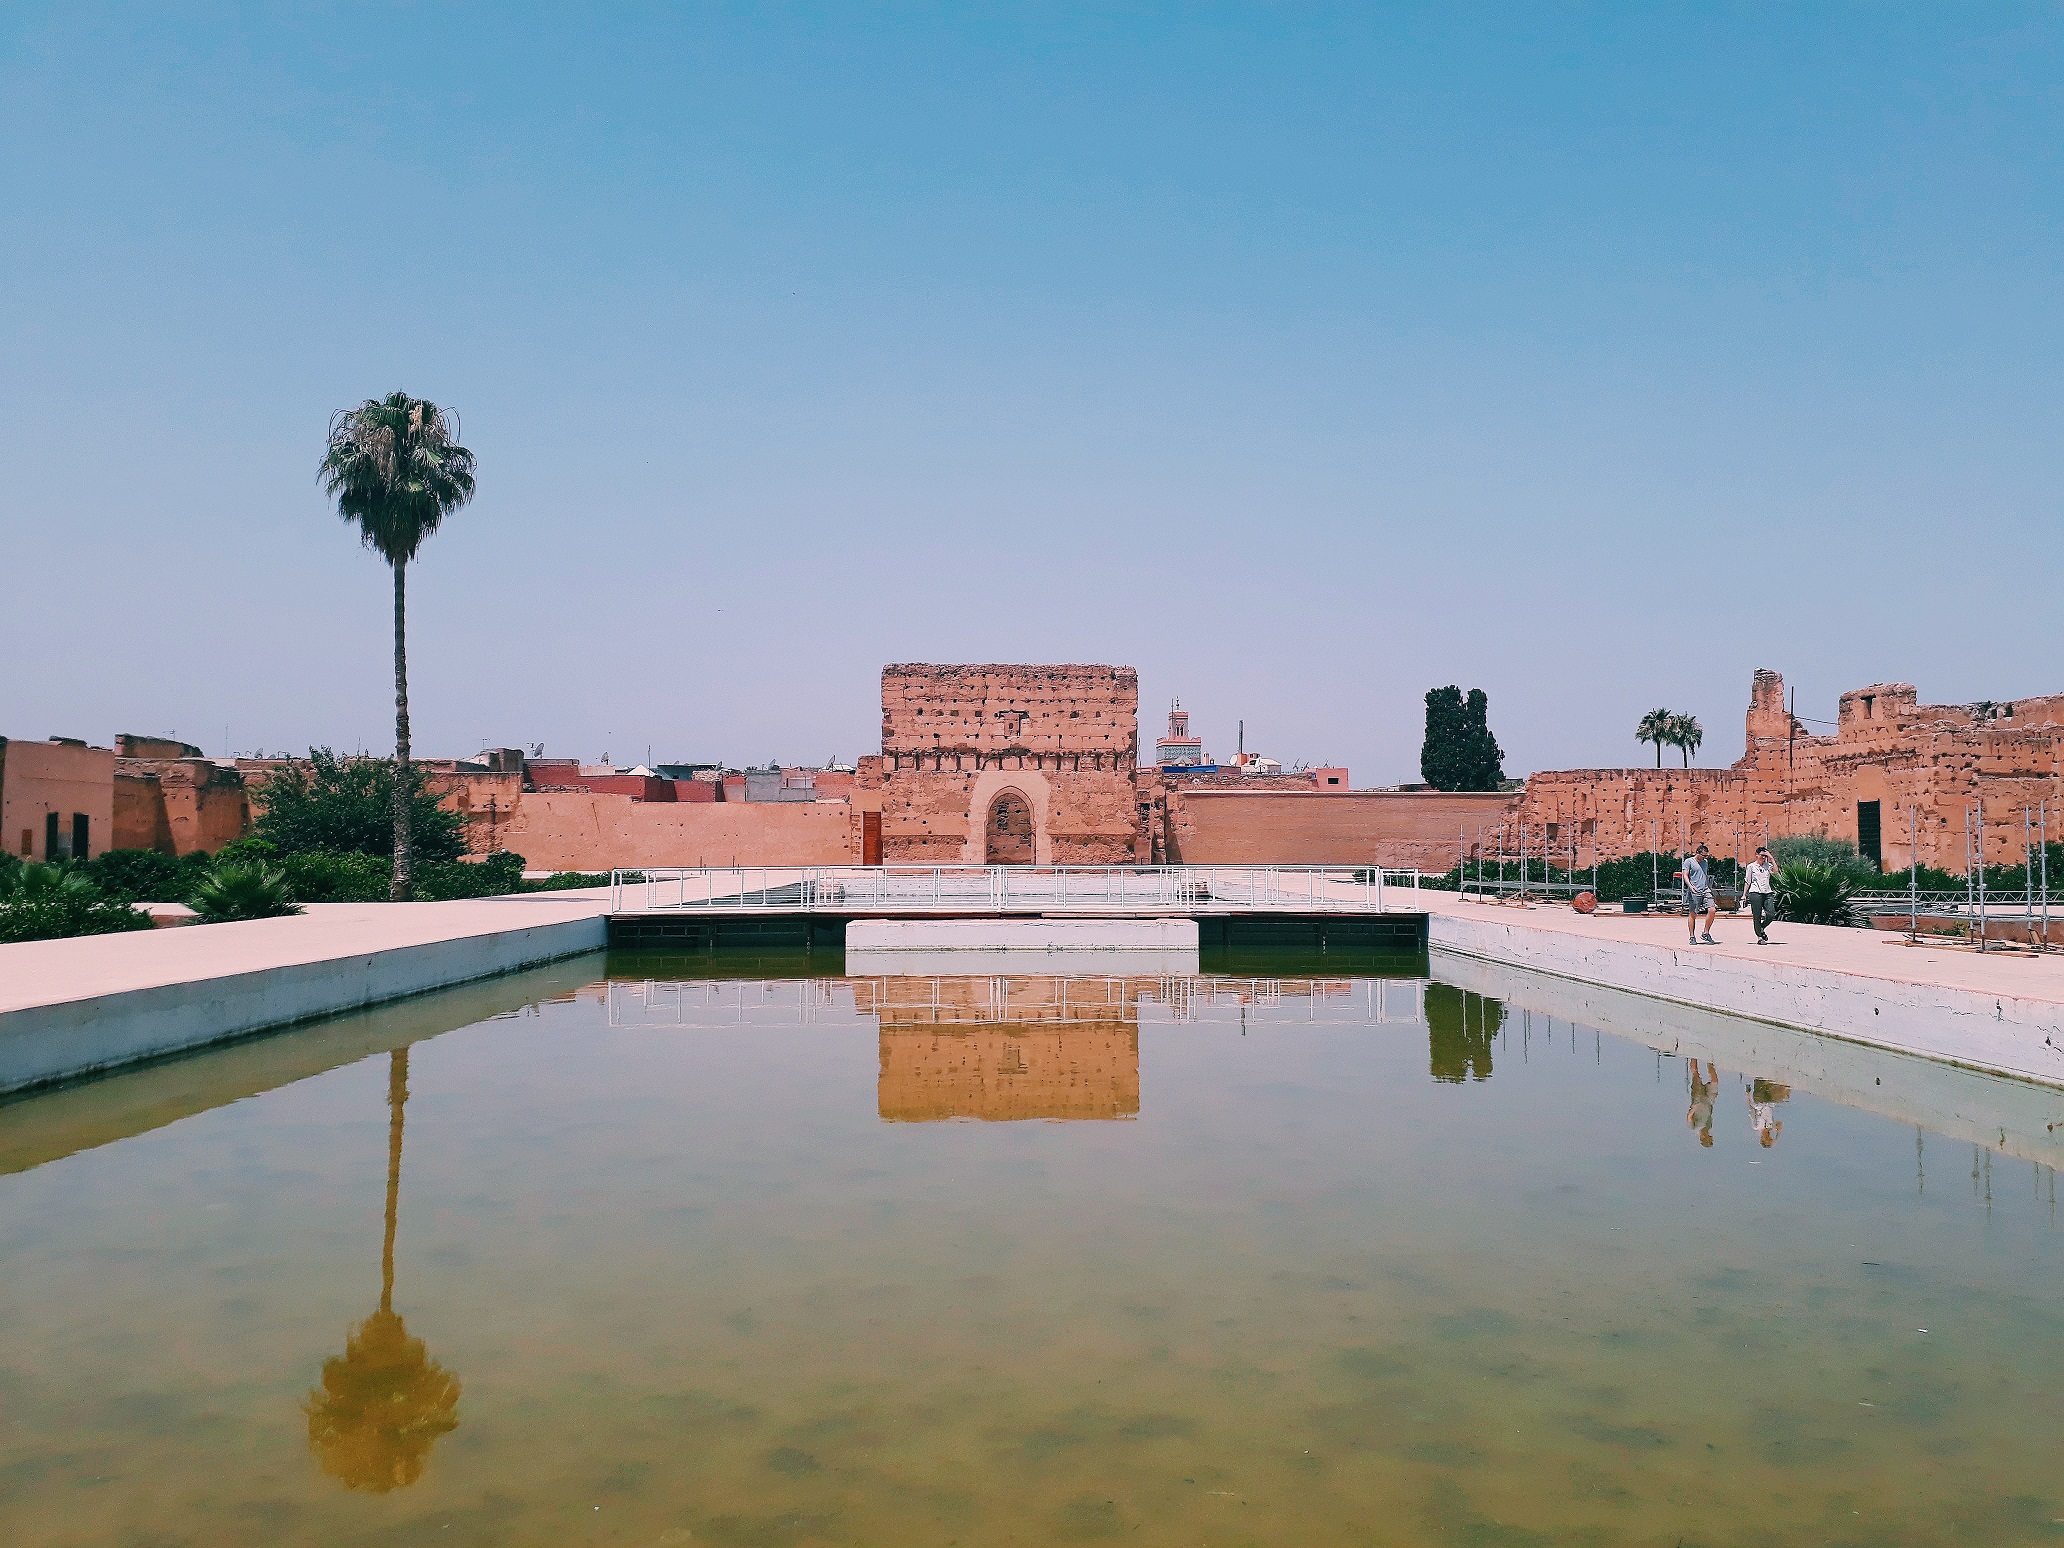 Day 07: Marrakech